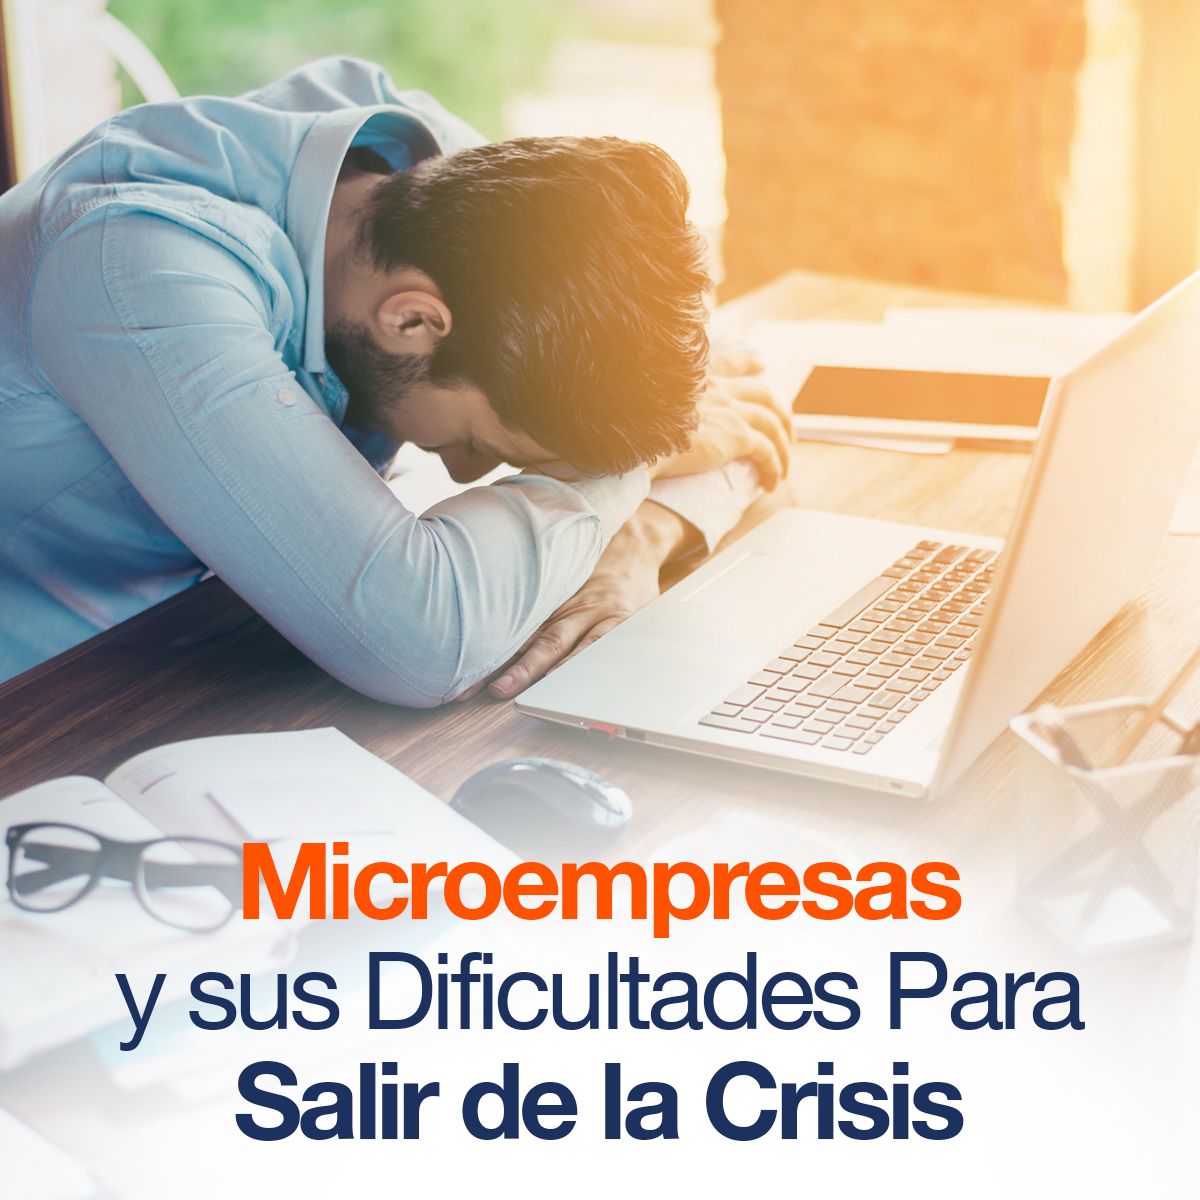 Microempresas y sus Dificultades Para Salir de la Crisis